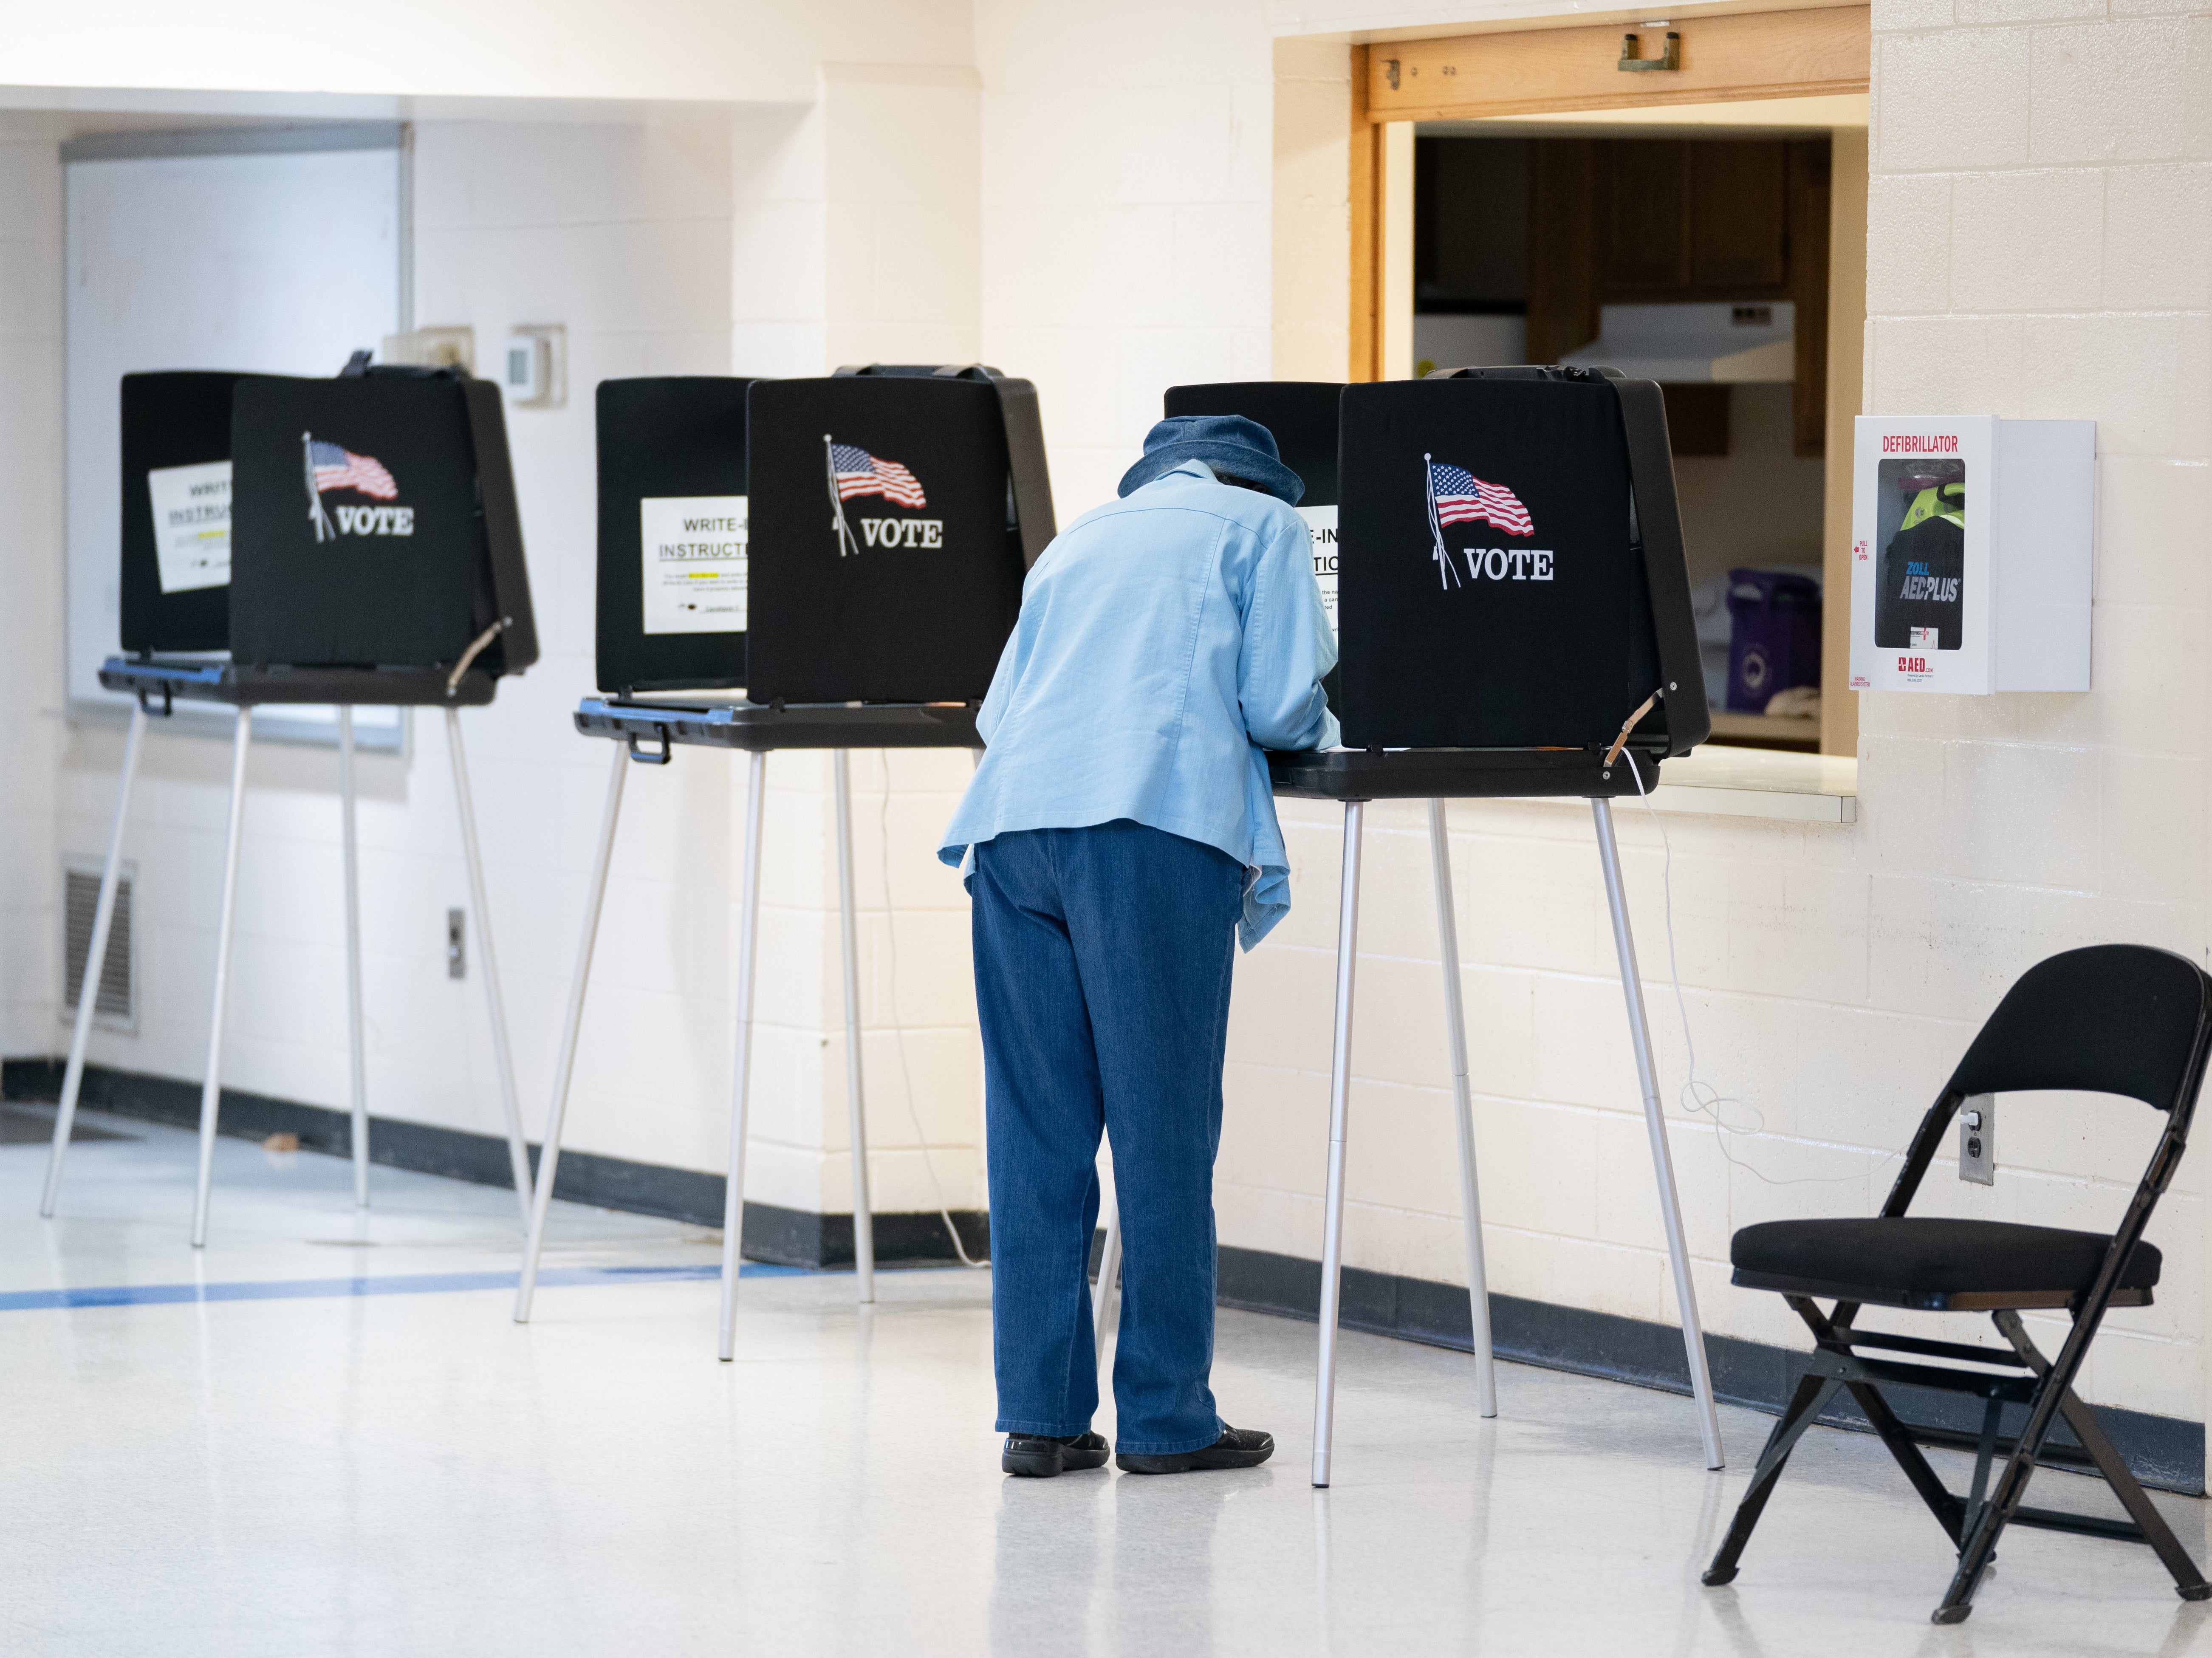 A voter casts a ballot on November 8, 2022 in Winston Salem, North Carolina